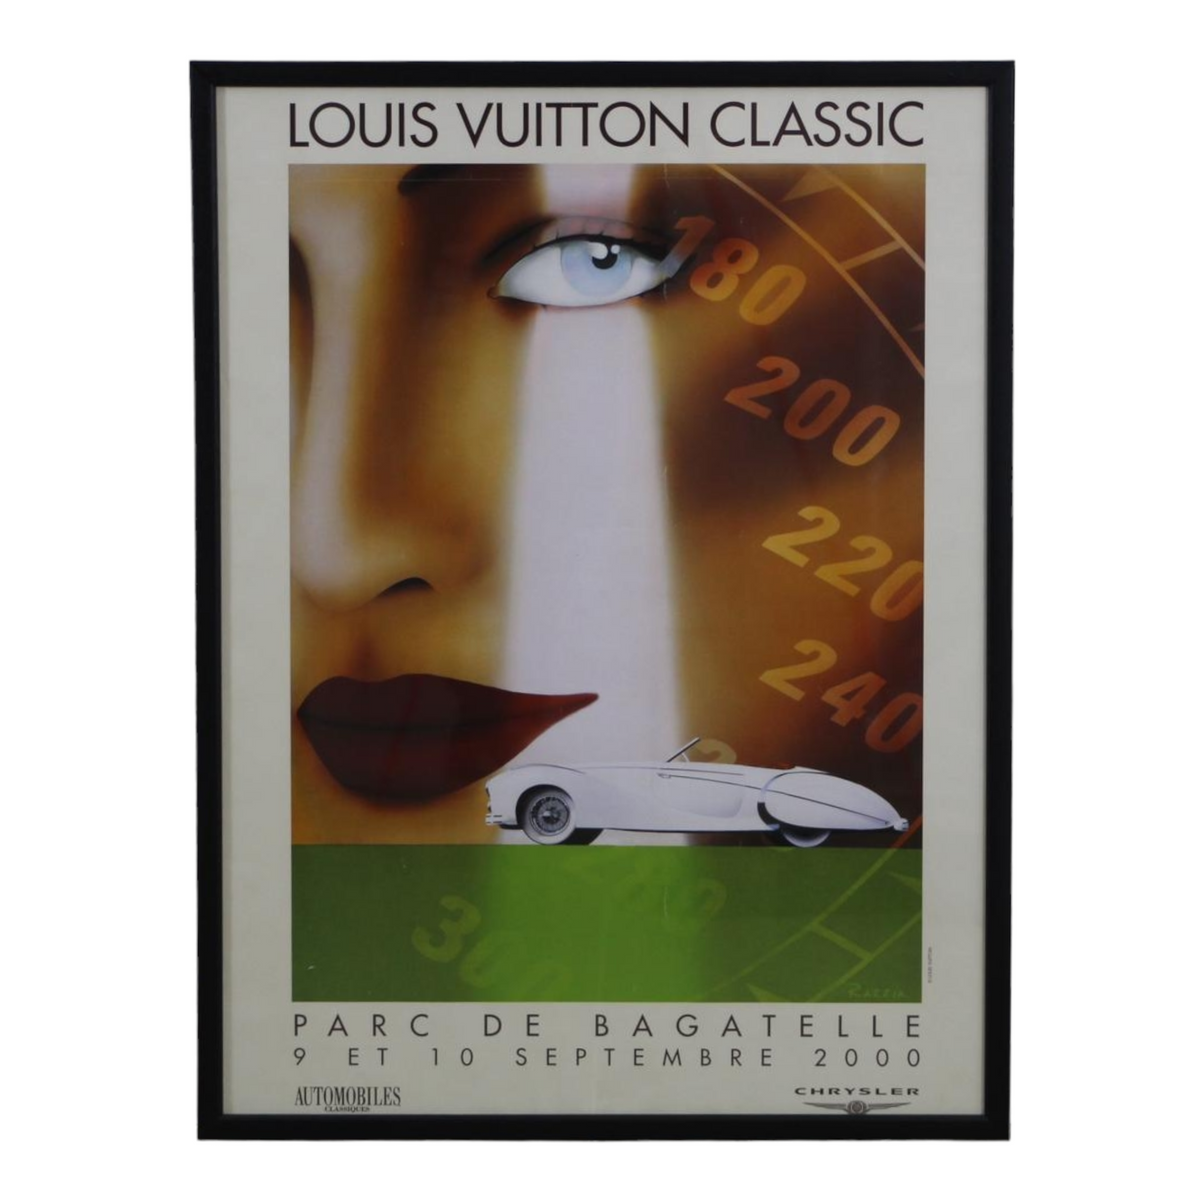 Louis Vuitton Bagatelle 1993 Concours d'Elegance large Razzia poster -  l'art et l'automobile